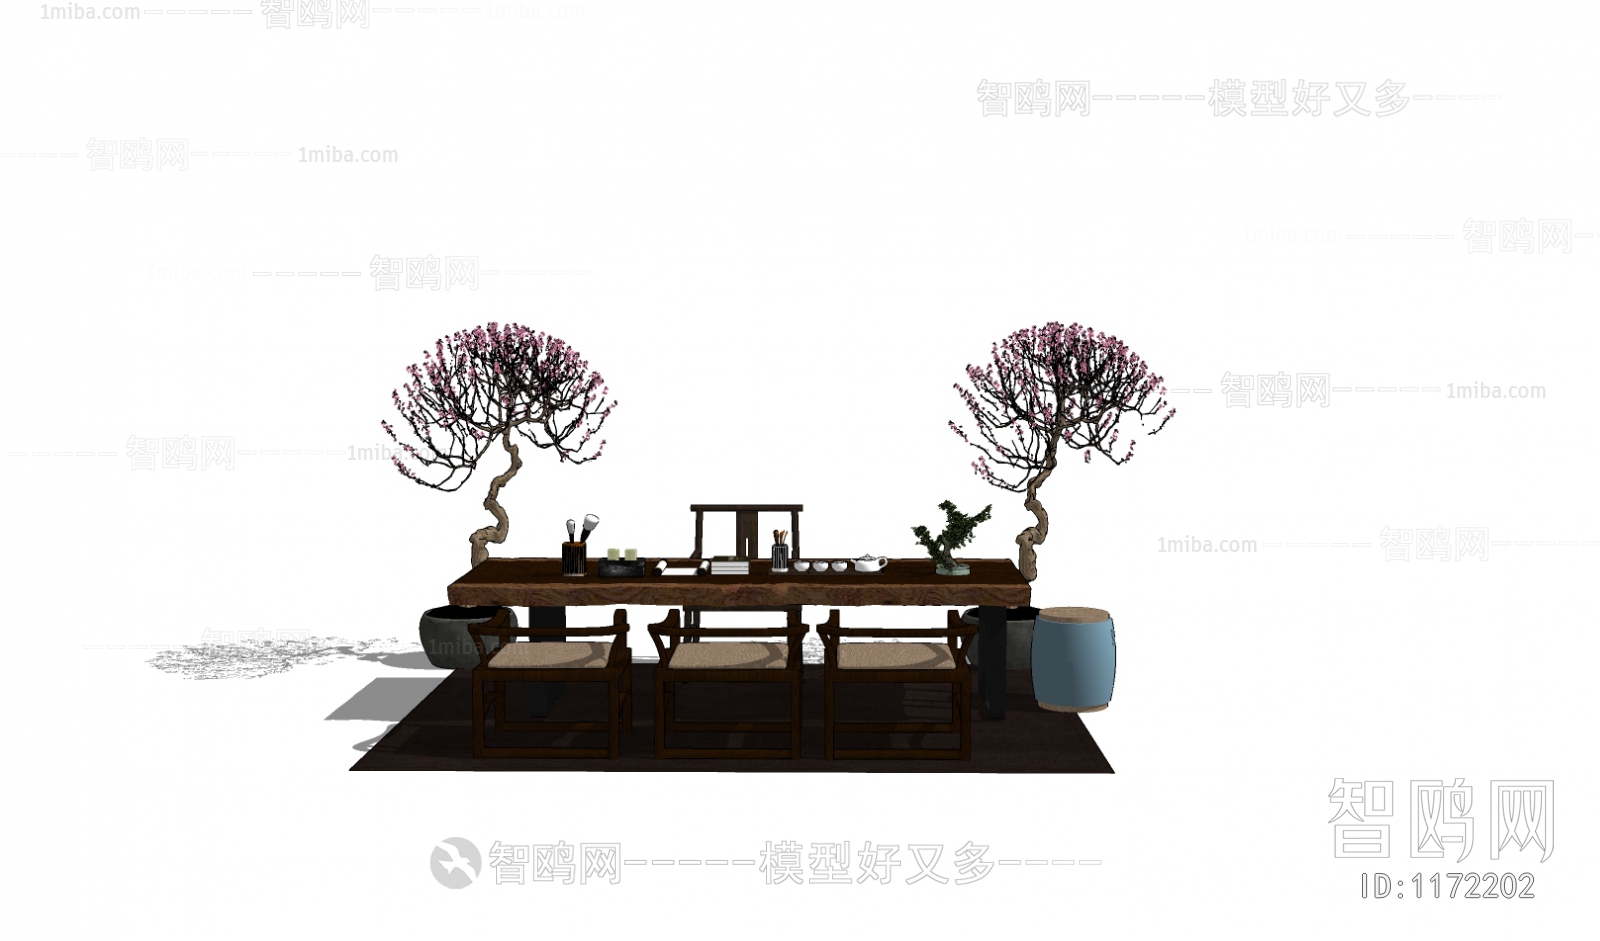 中式休闲桌椅组合